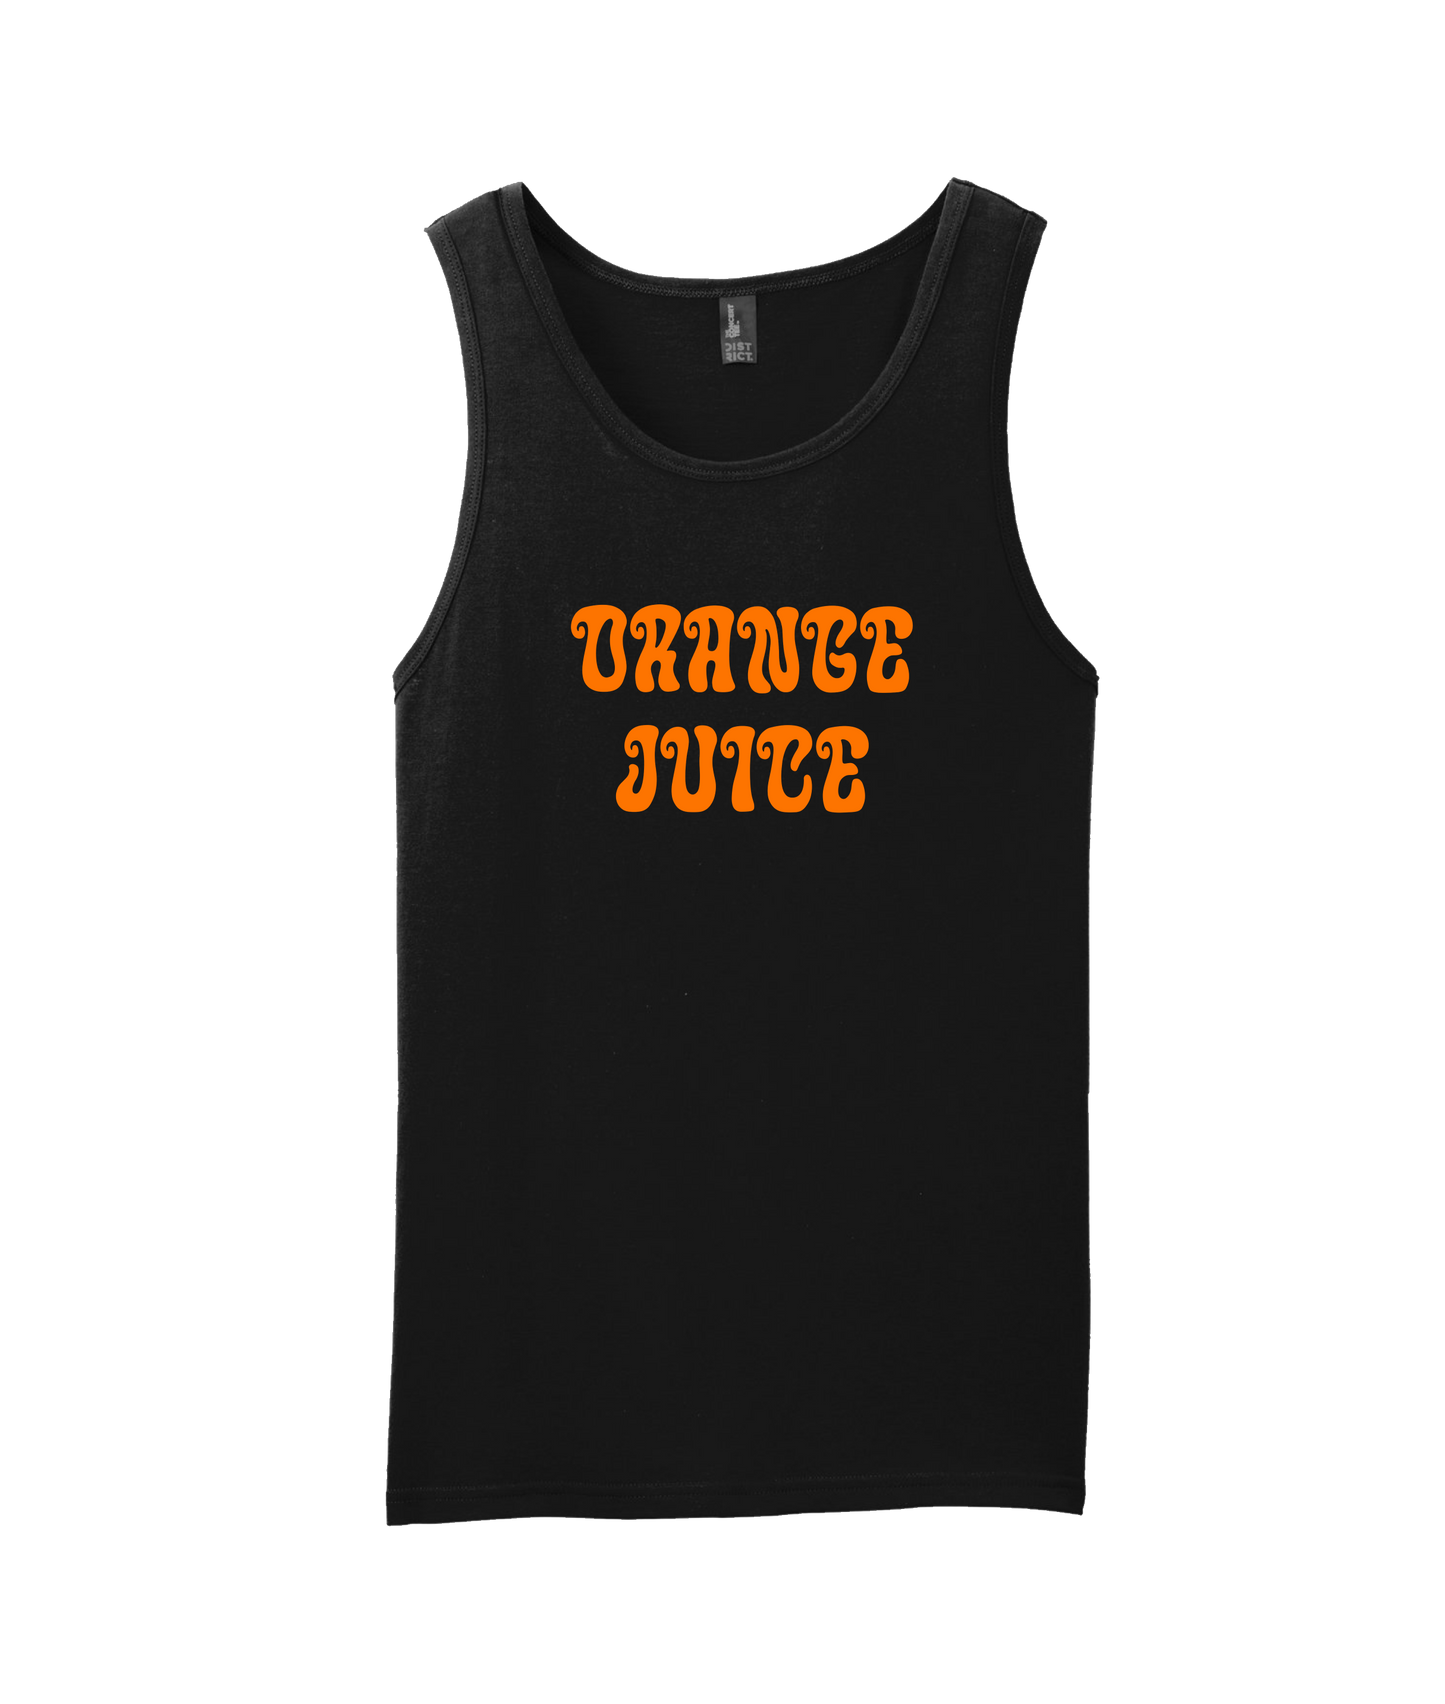 Orange Juice - OJ - Black Tank Top